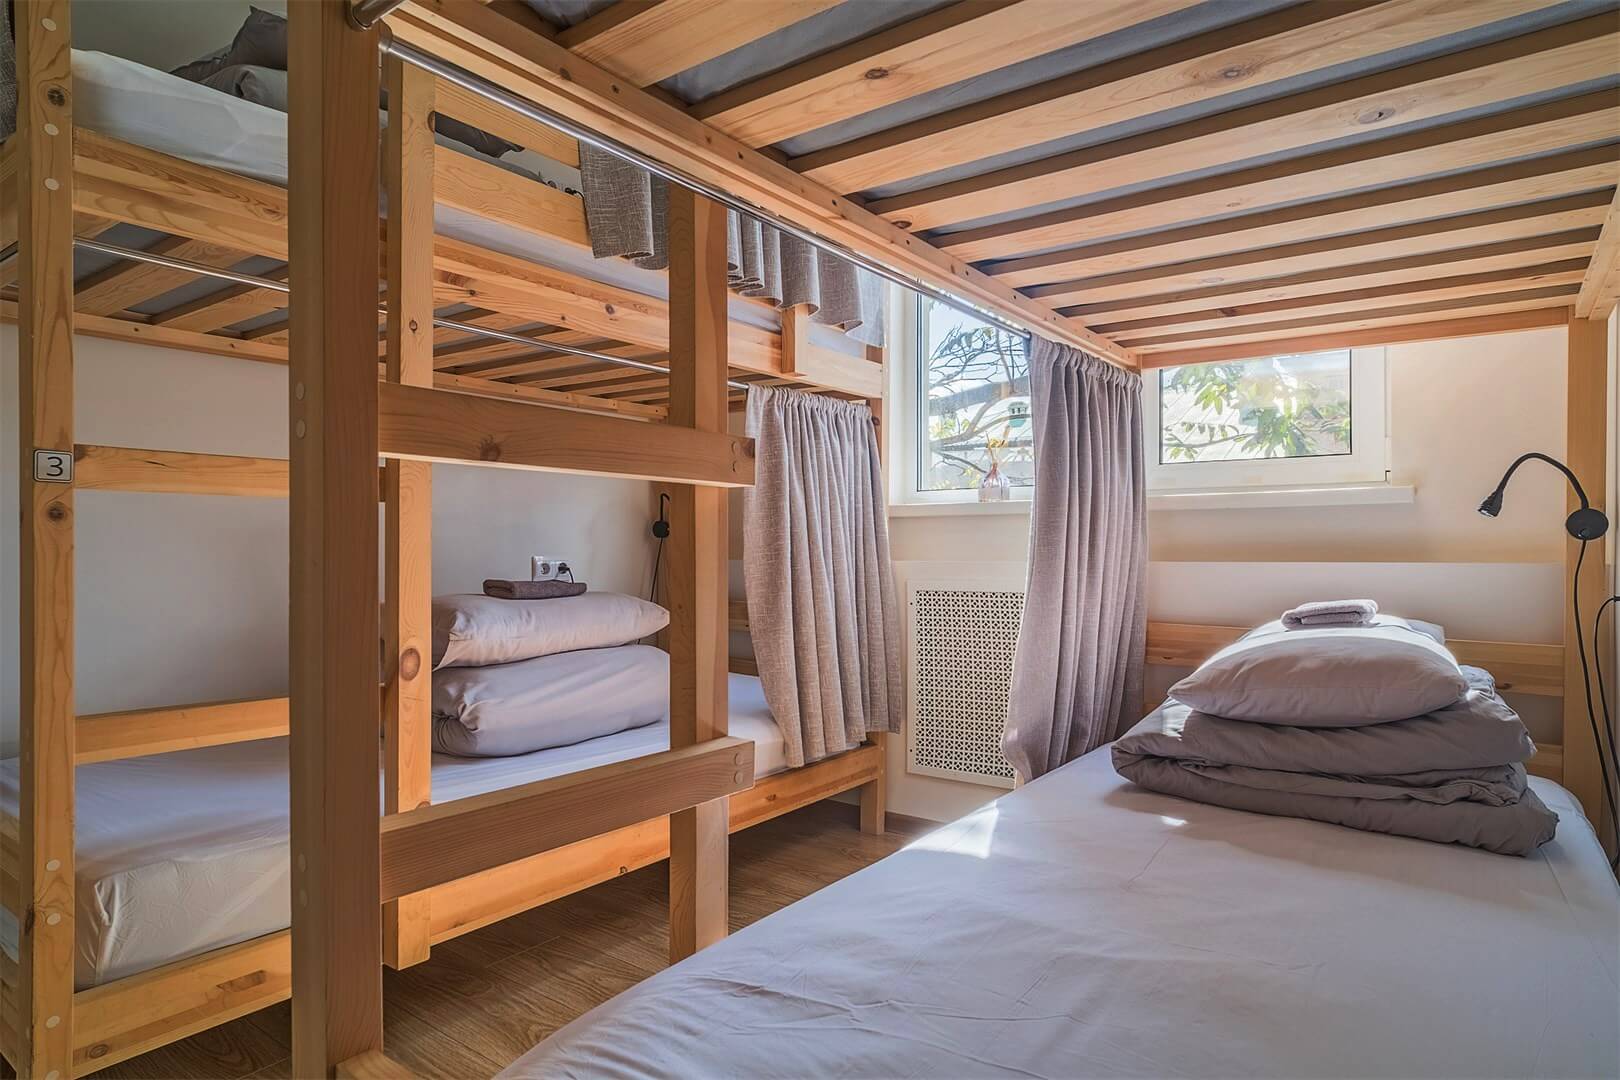 Пример спального места в номере с окном.